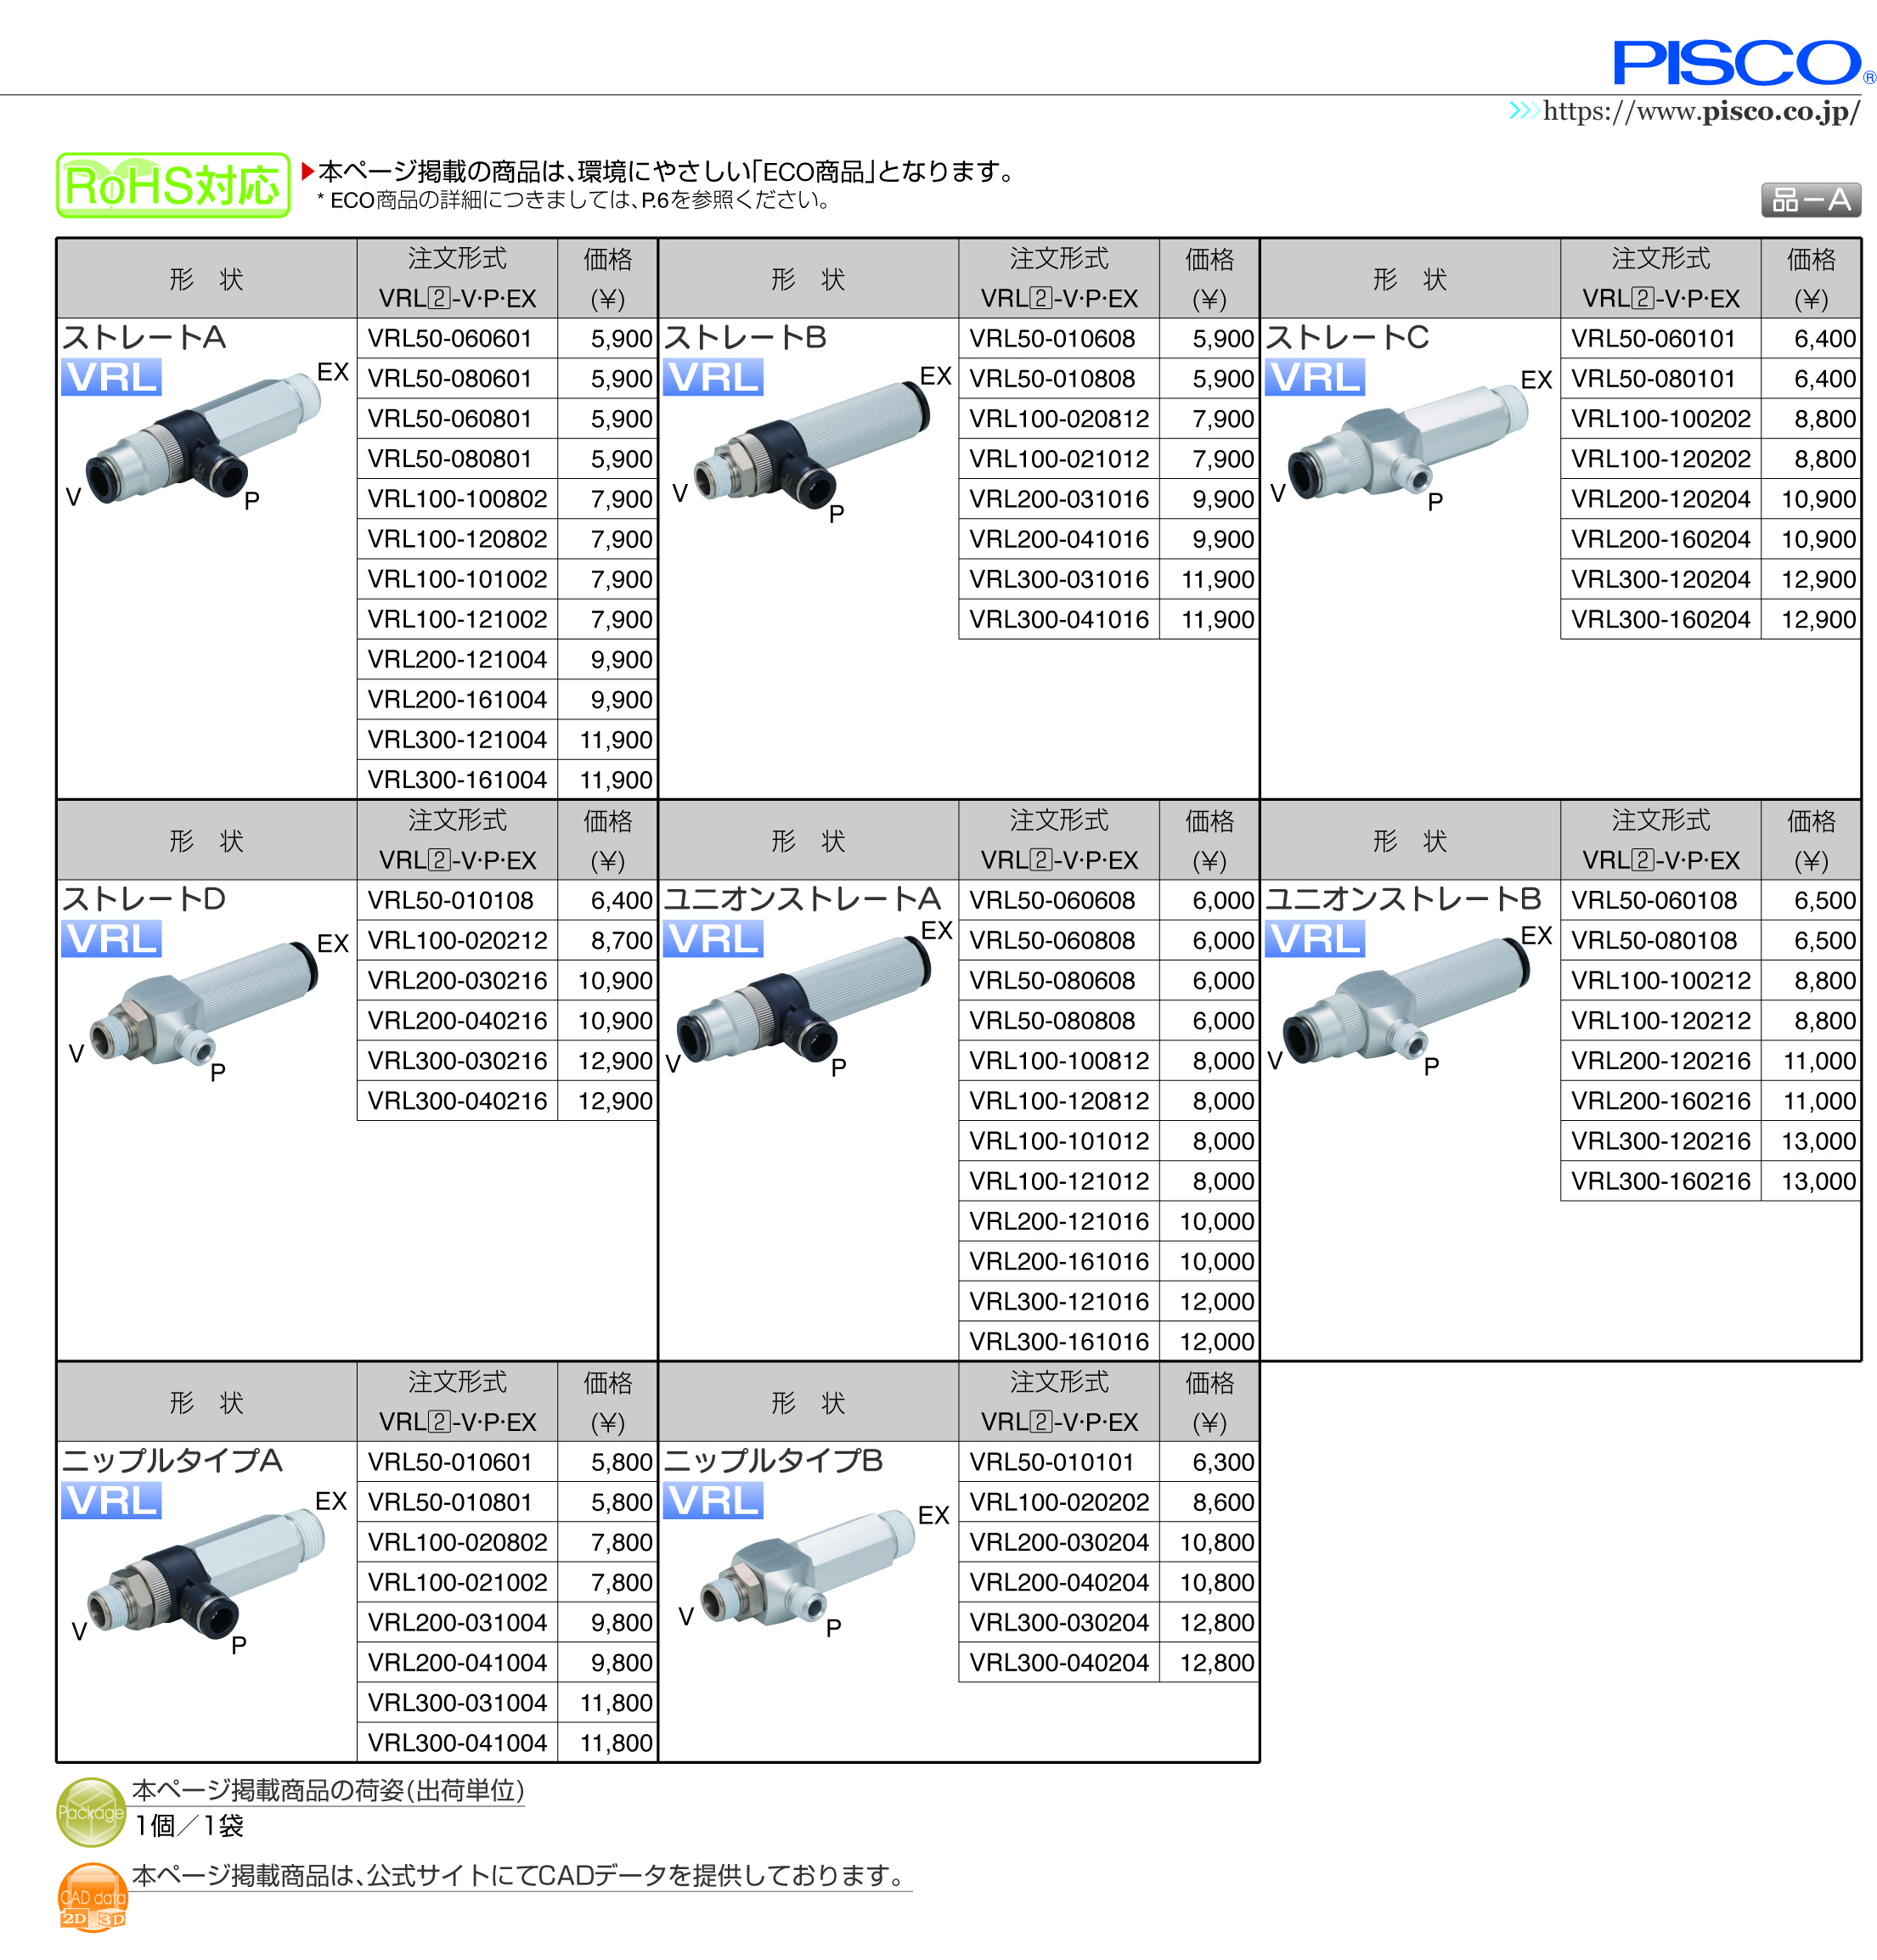 よいしな / 真空発生器ﾆｯﾌﾟﾙB ㈱日本ピスコ PISCO